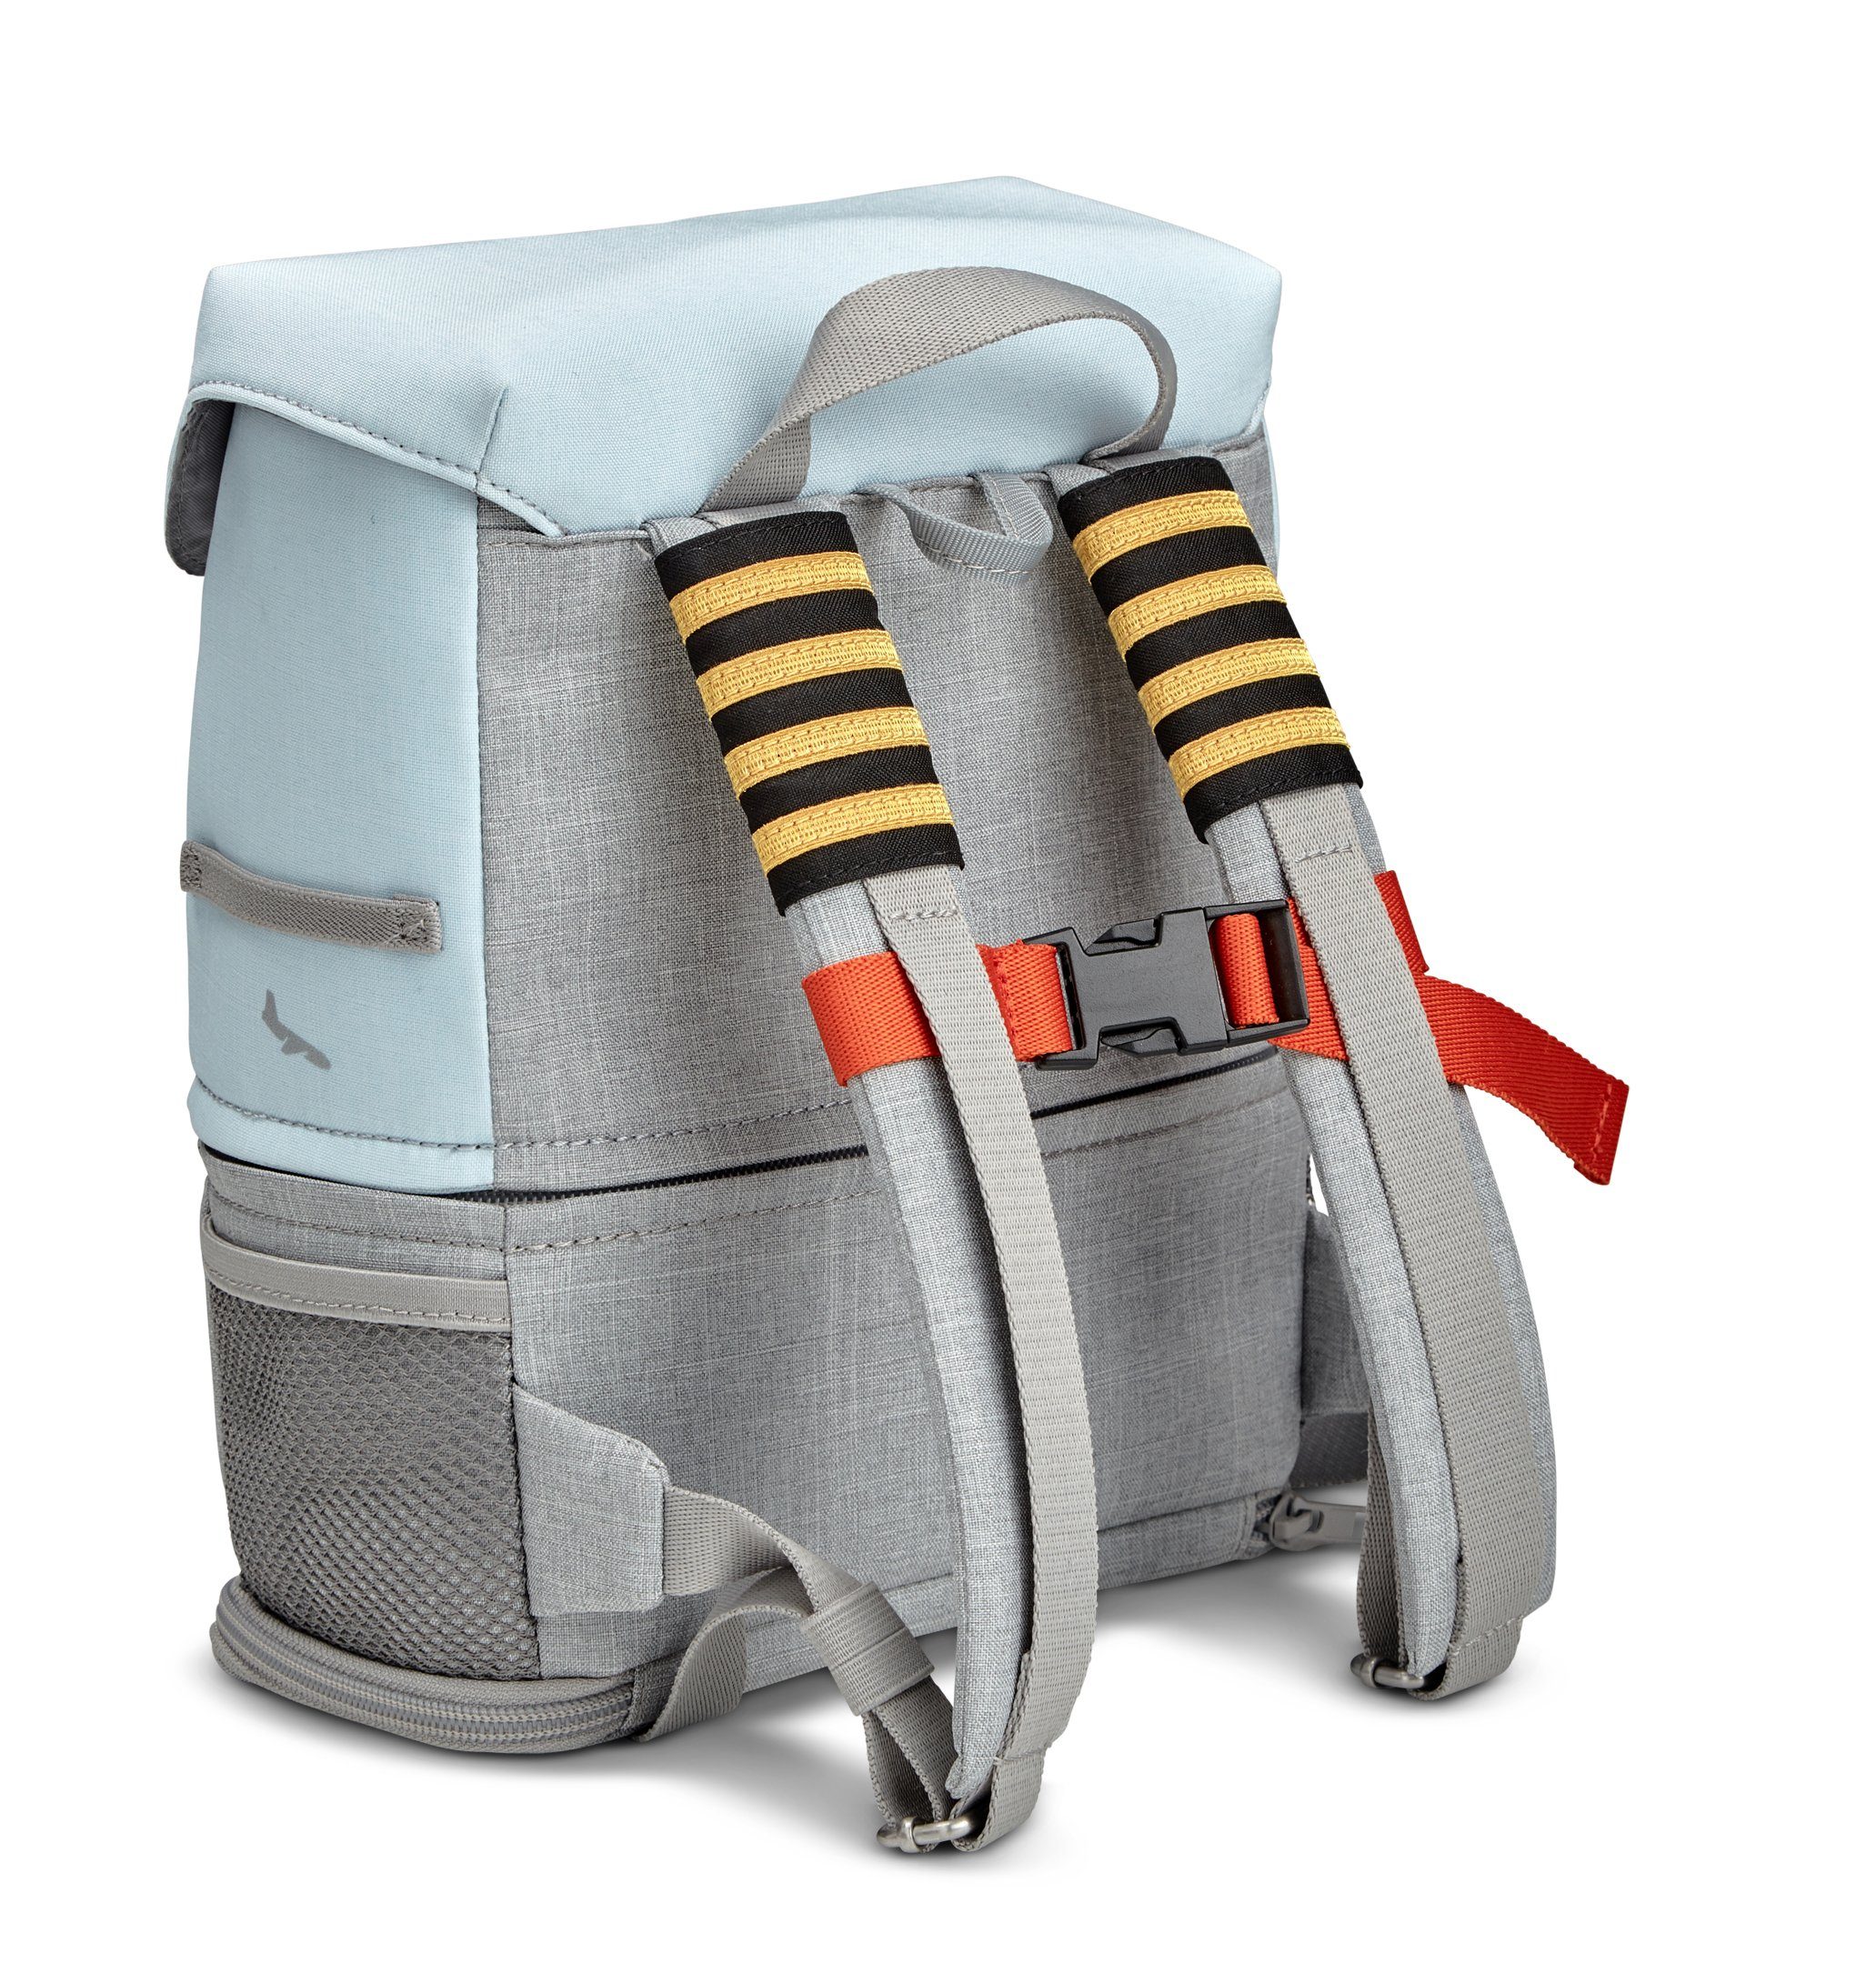 Sky BedBox (Koffer + lange - Rucksack) JetKids™ Stokke und Ideal Koffer kurze Reisen Blue by für Kinderkoffer